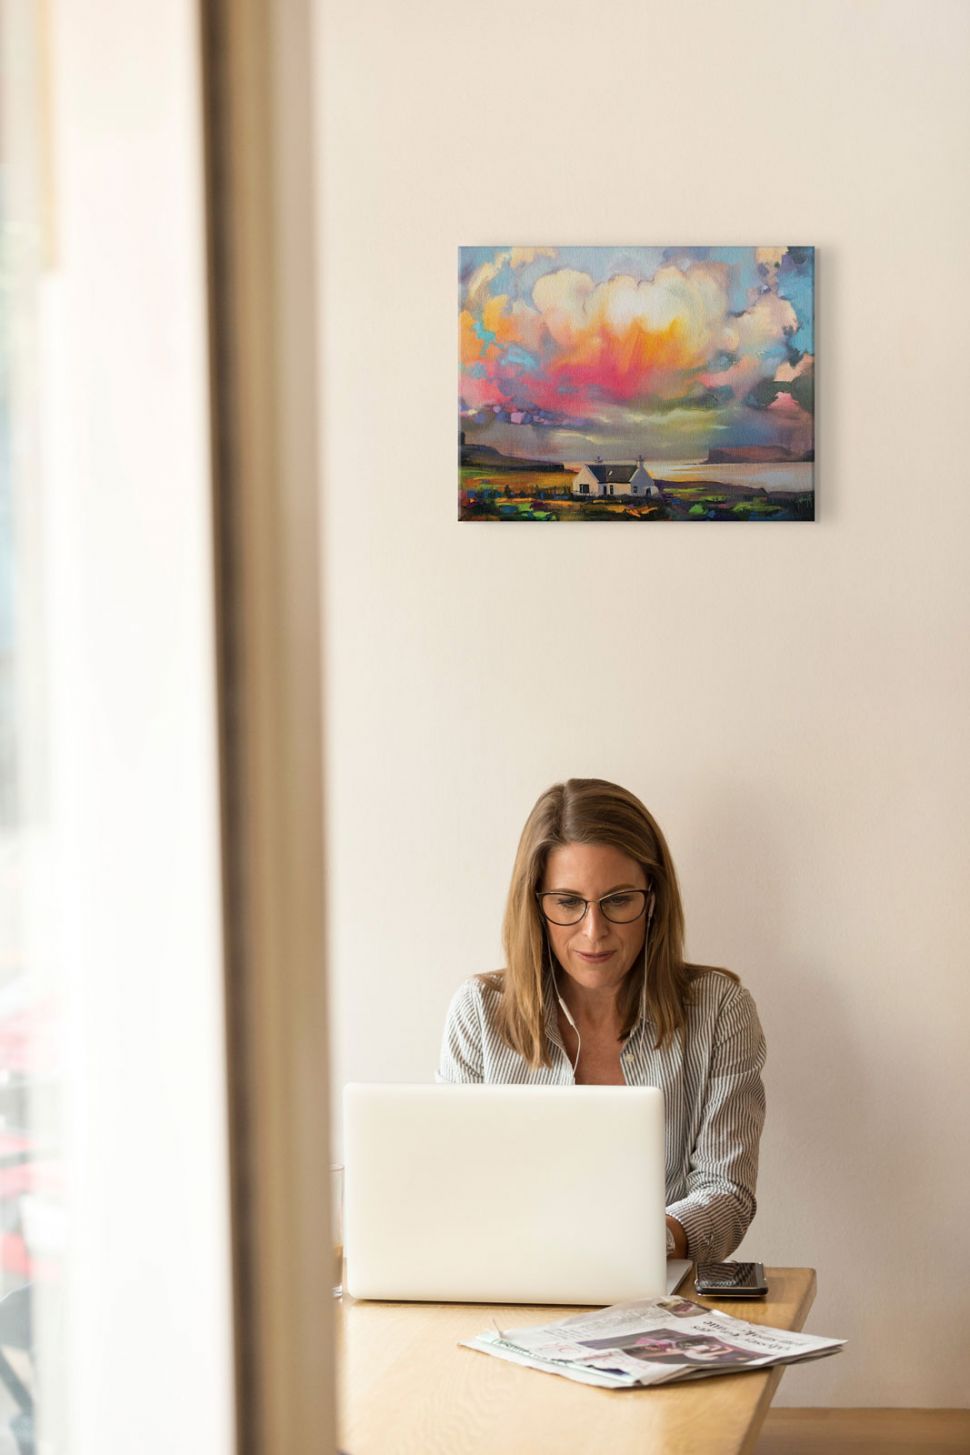 Obraz na płótnie przedstawiający kolorowe niebo nad kościołem powieszony na ścianie nad kobietą siedzącą przed laptopem